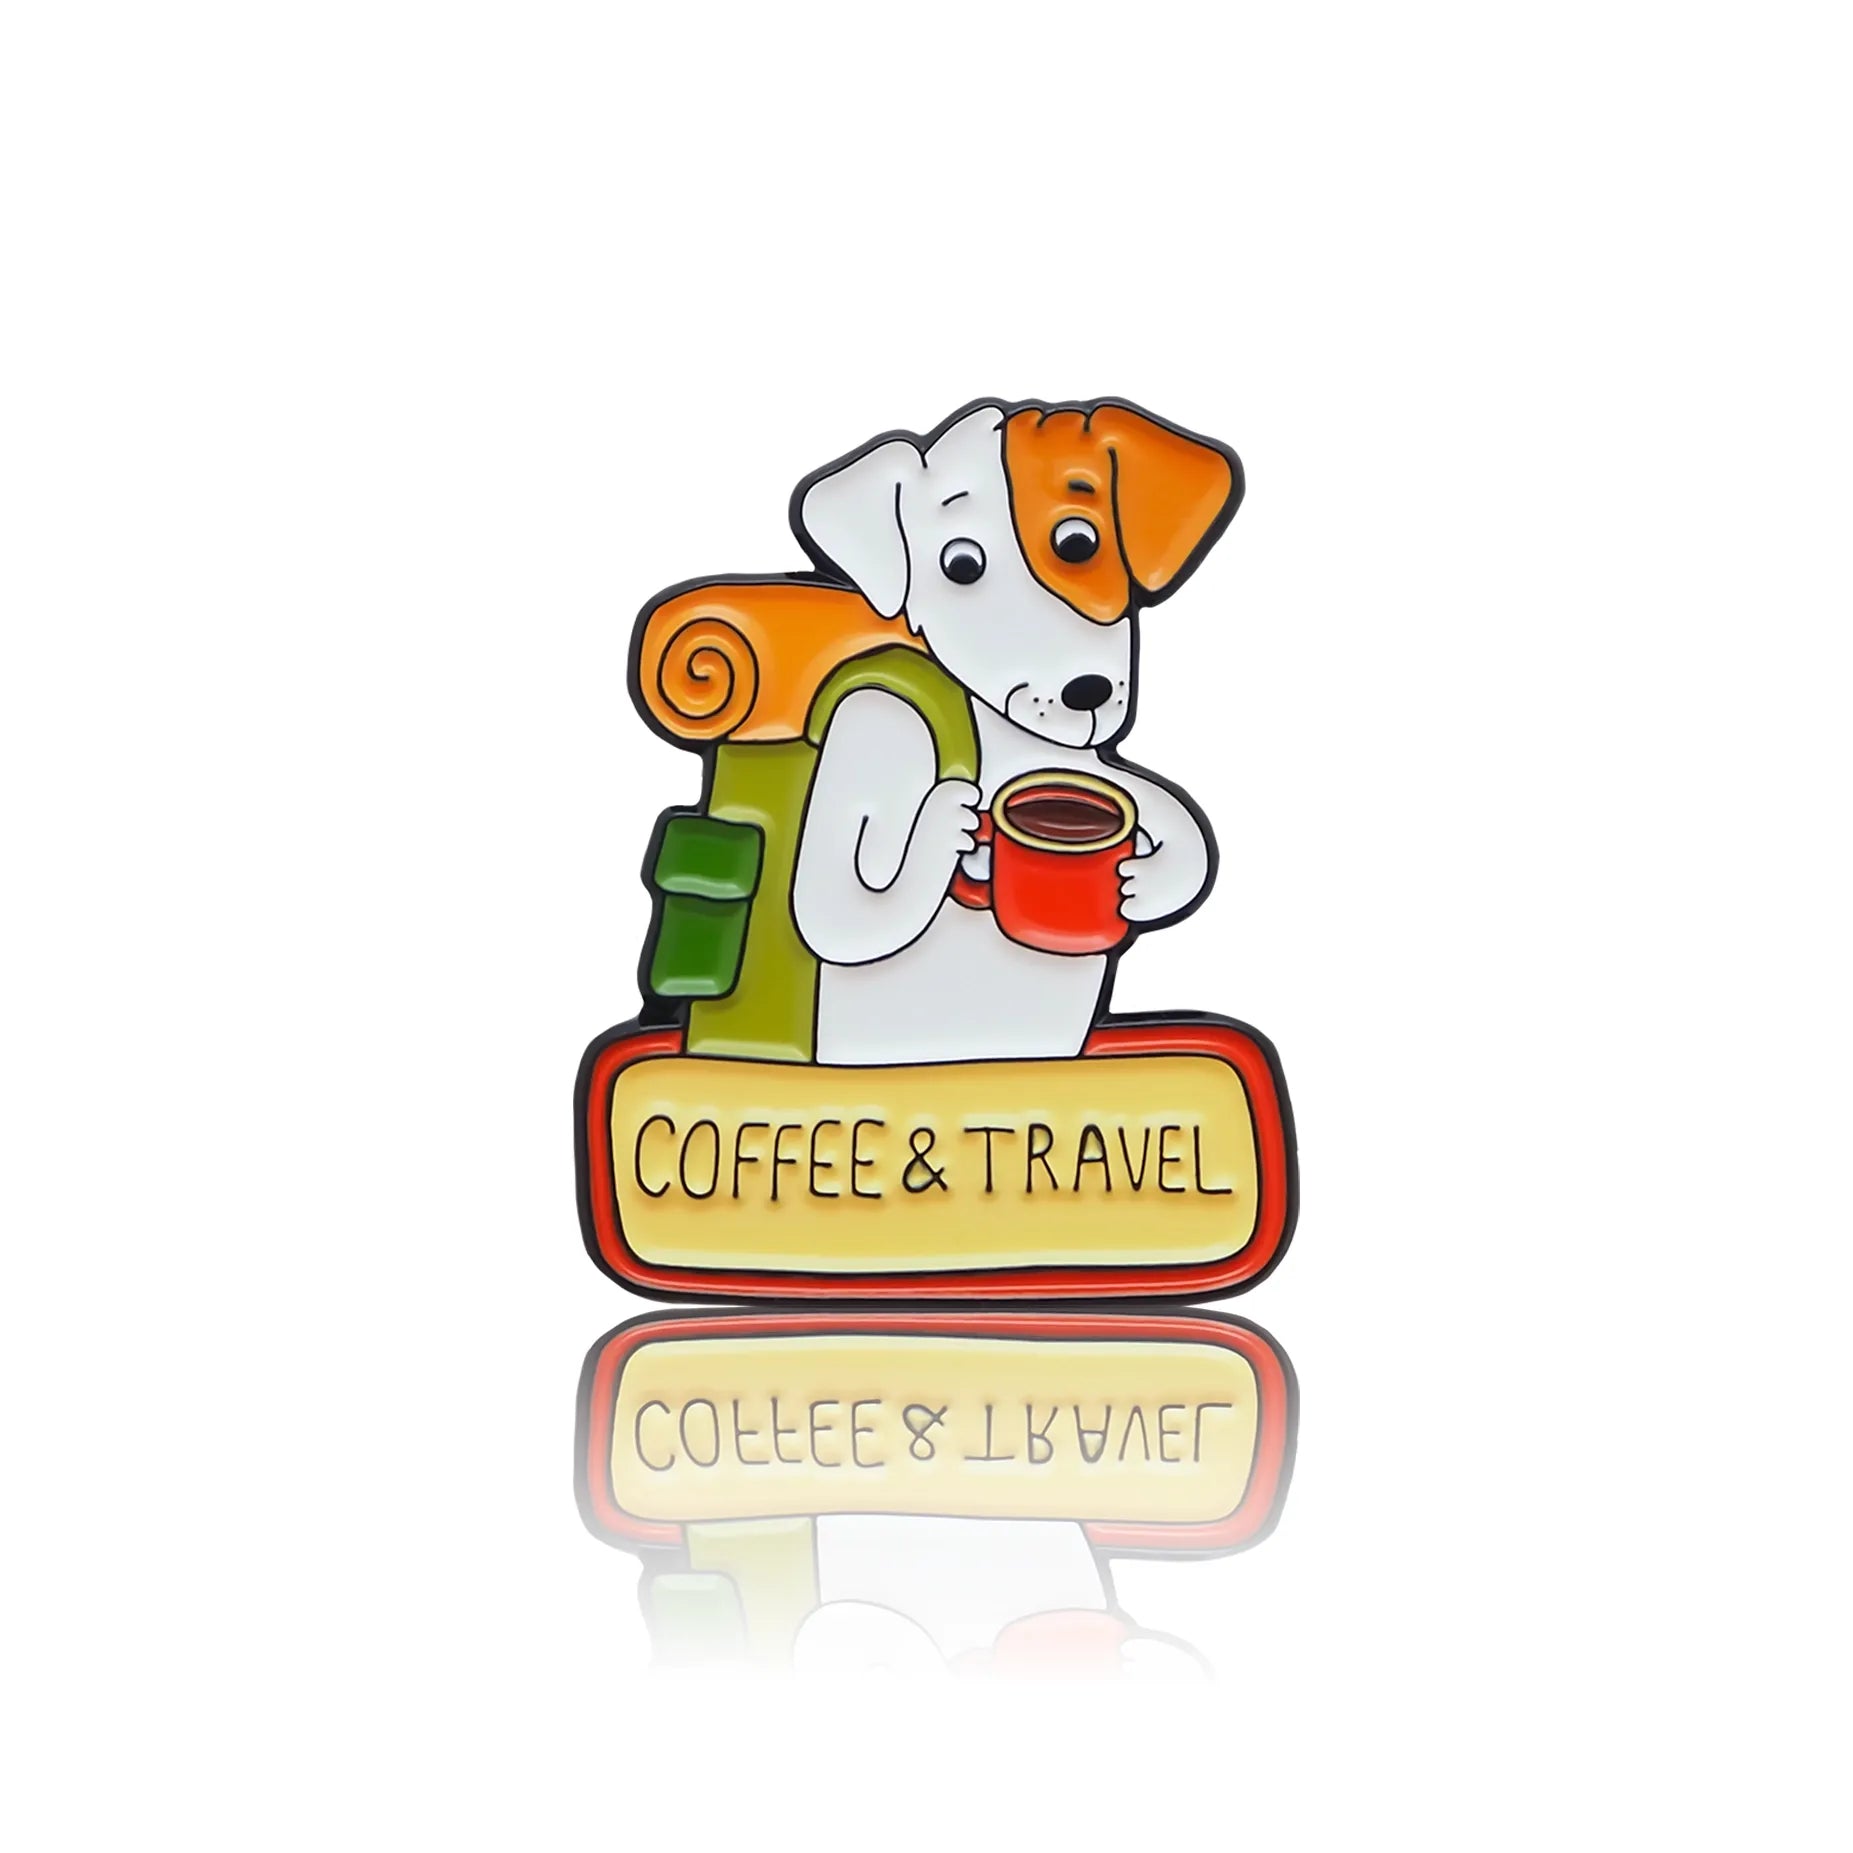 Piesek z plecakiem, kubkiem kawy i napisem "Coffee & Travel"